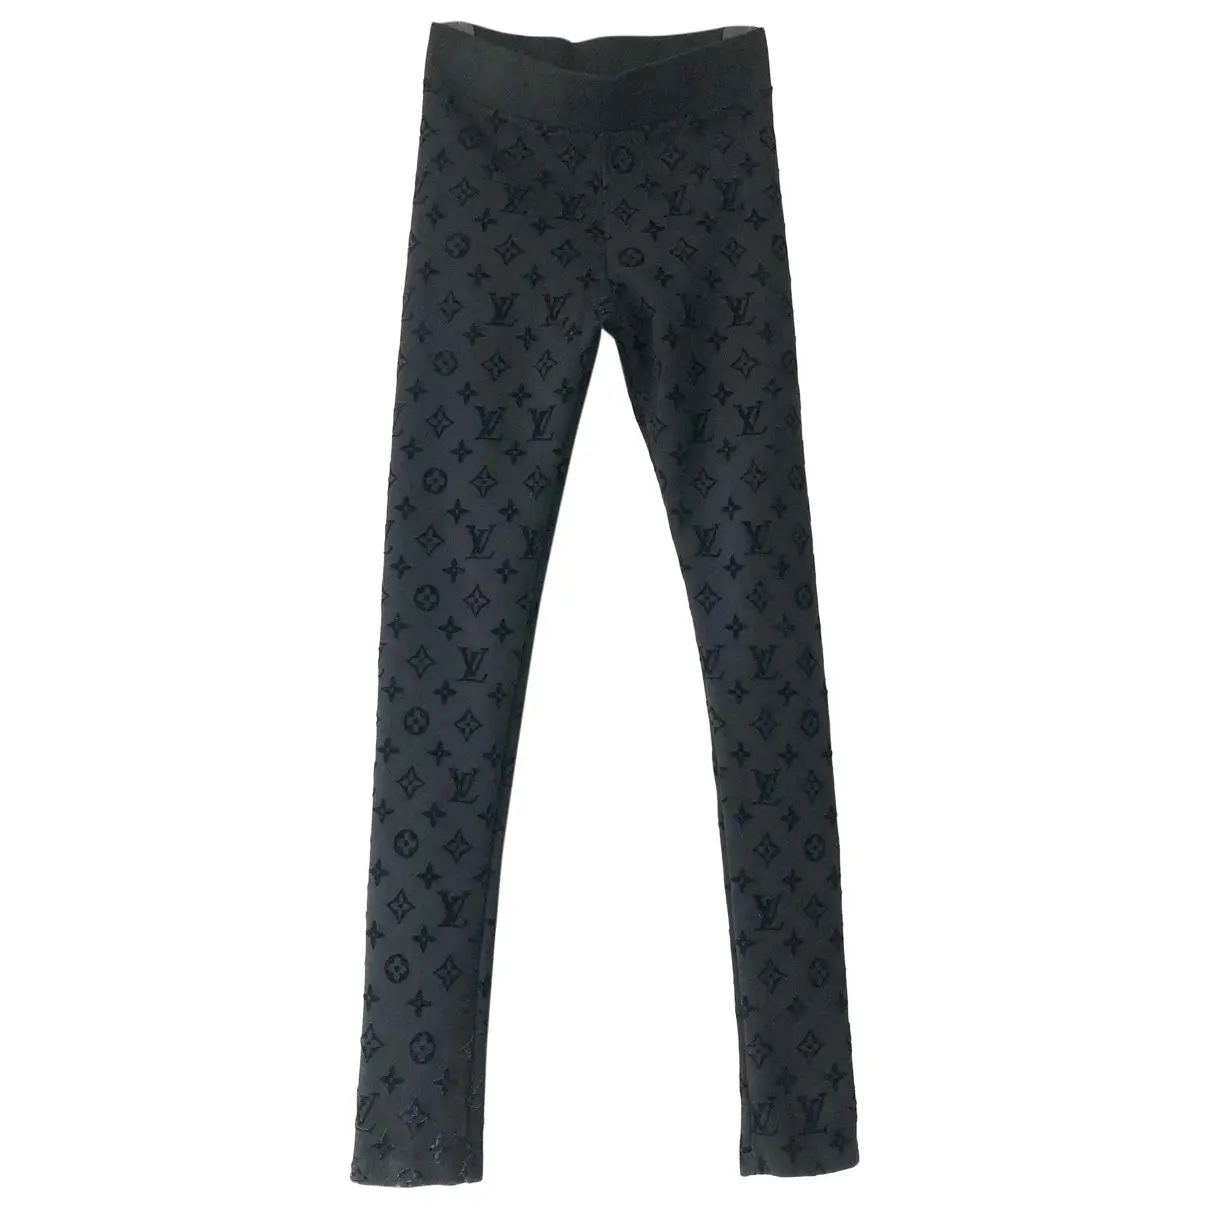 Leggings Louis Vuitton Black size M International in Polyamide - 32644786